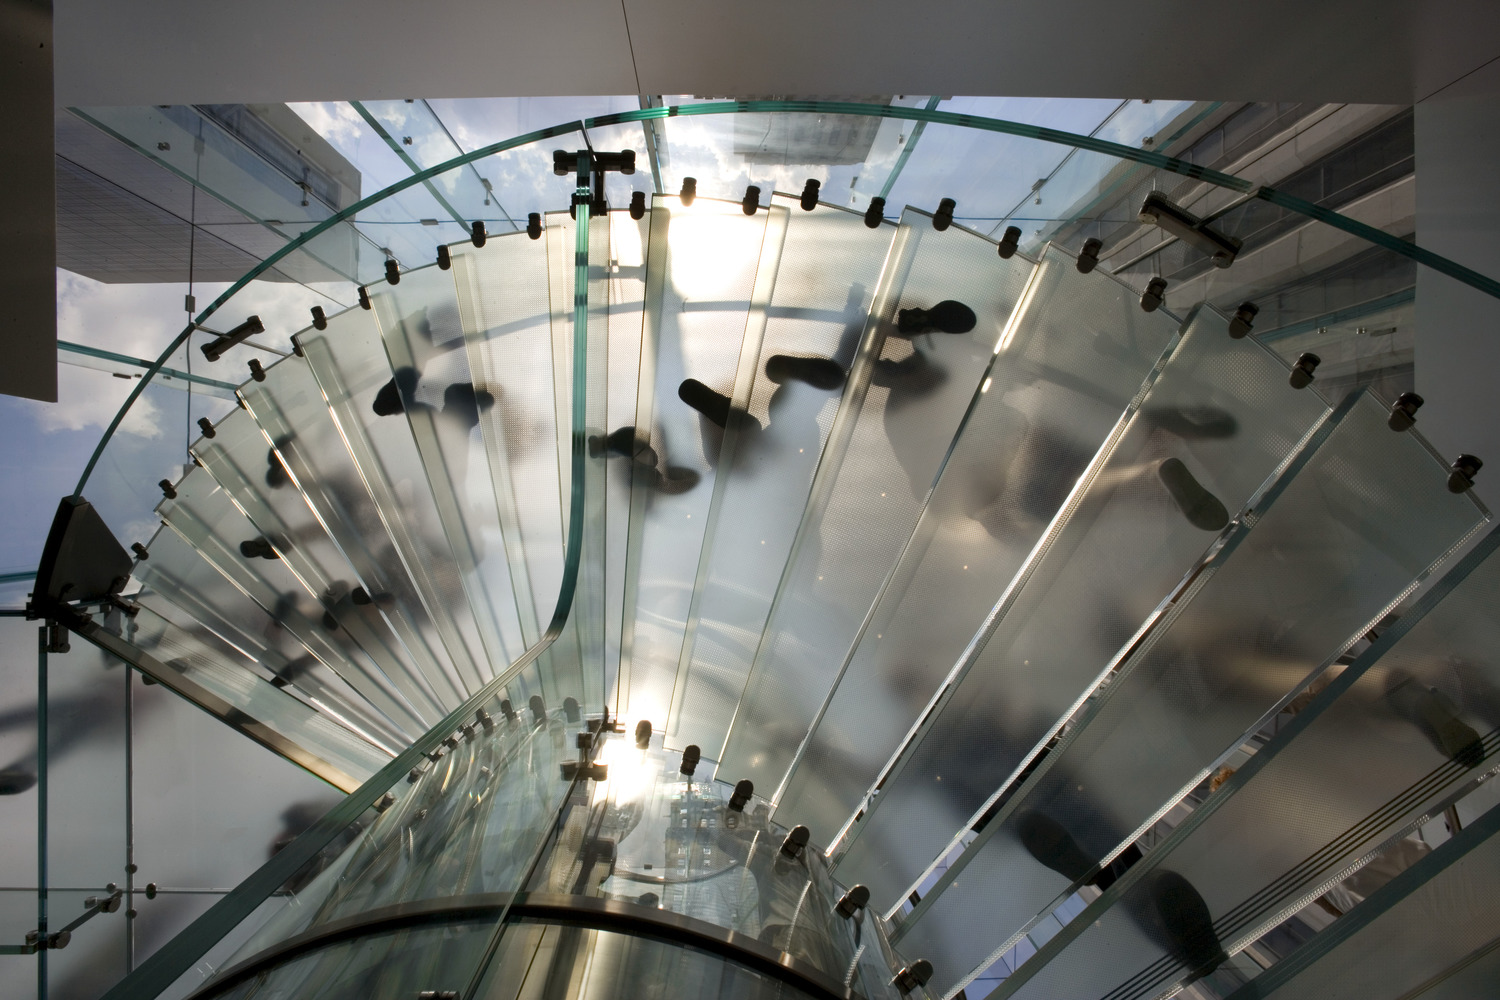 Apple Store Lincoln Road/Chrysler Building — Shulman + Associates